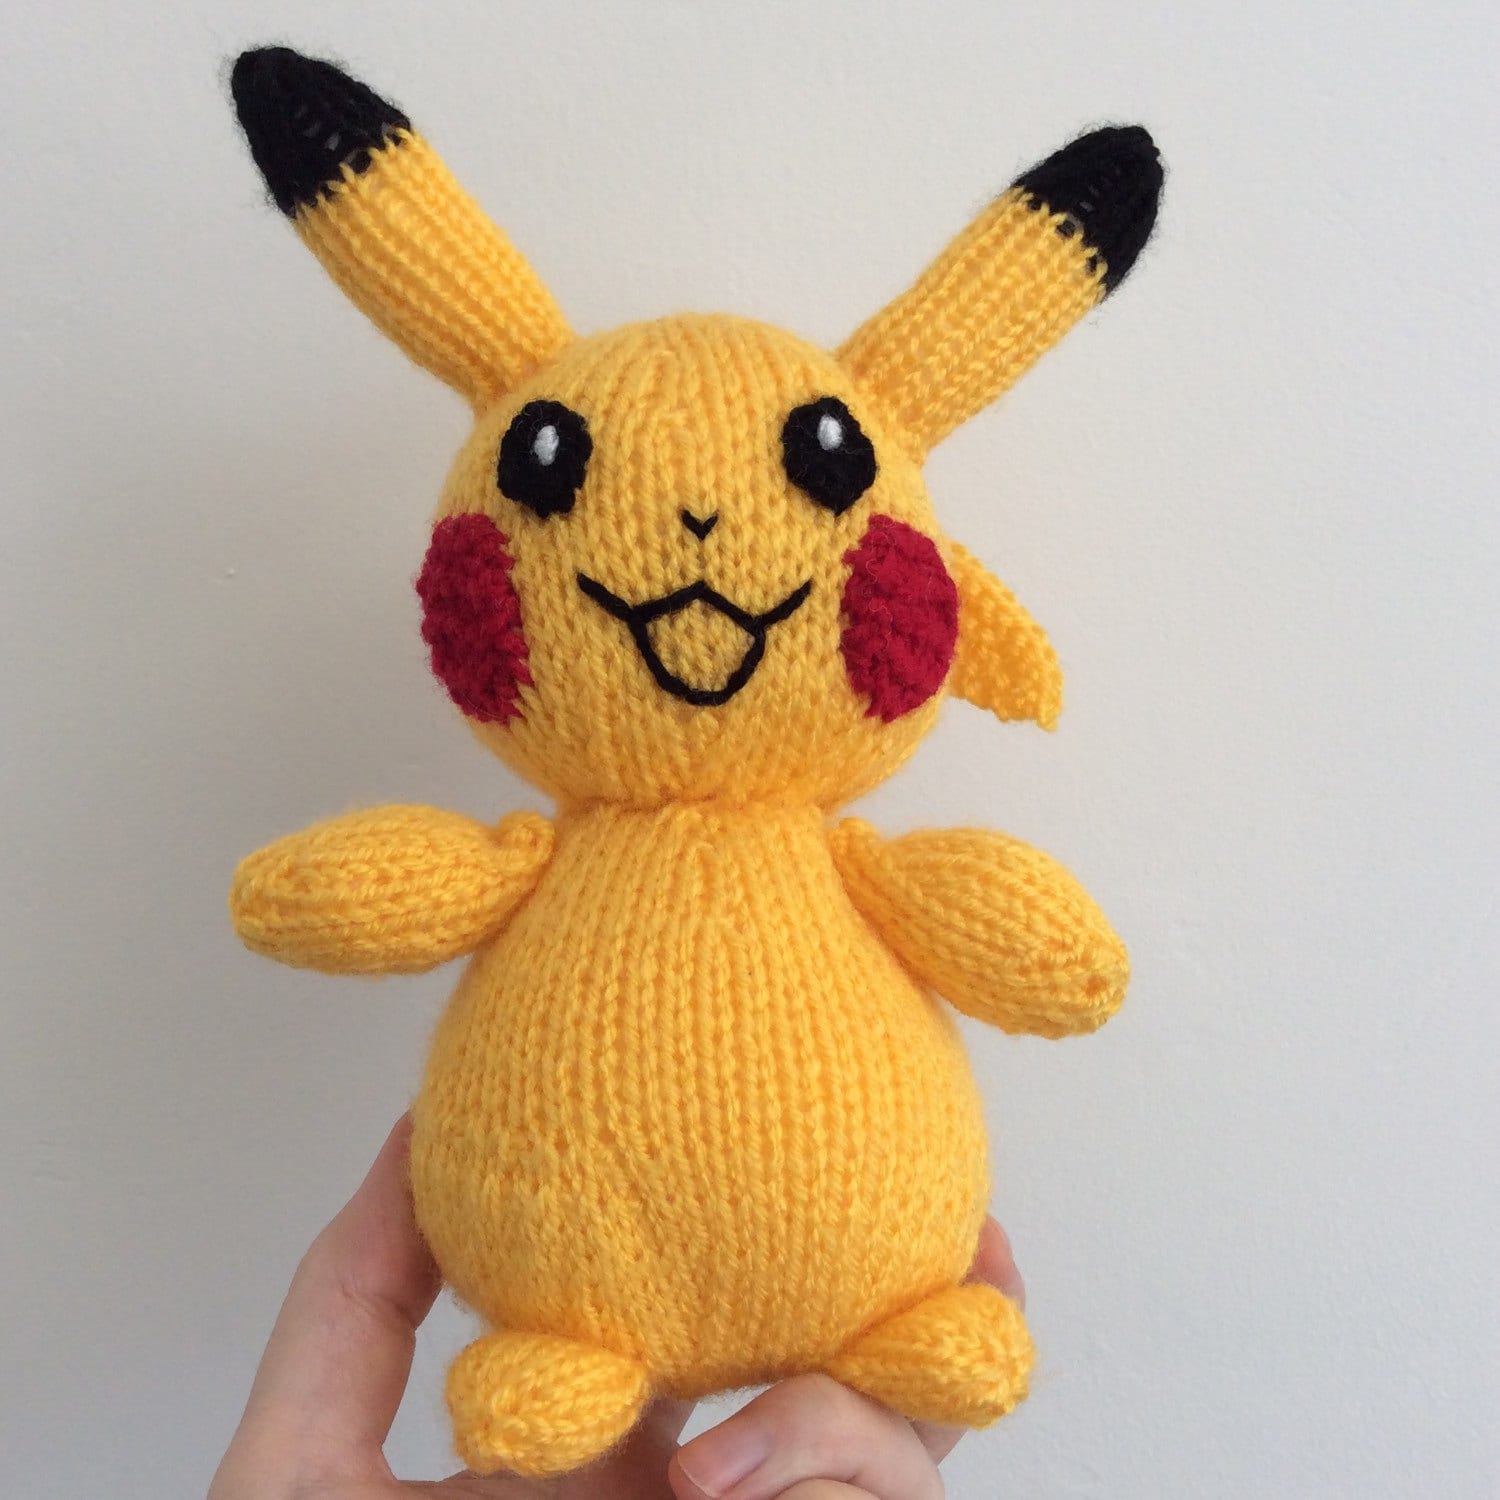 Knitted toy pikachu plush pokemon toy doll stuffed animal